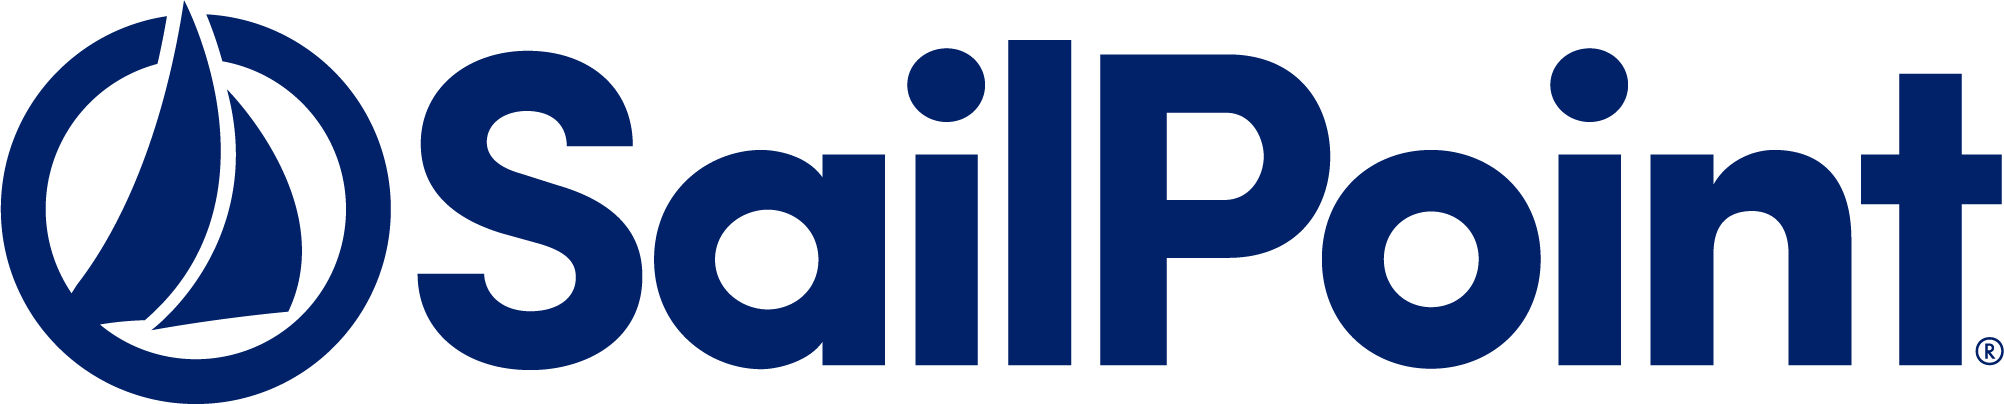 sailpoint-logo